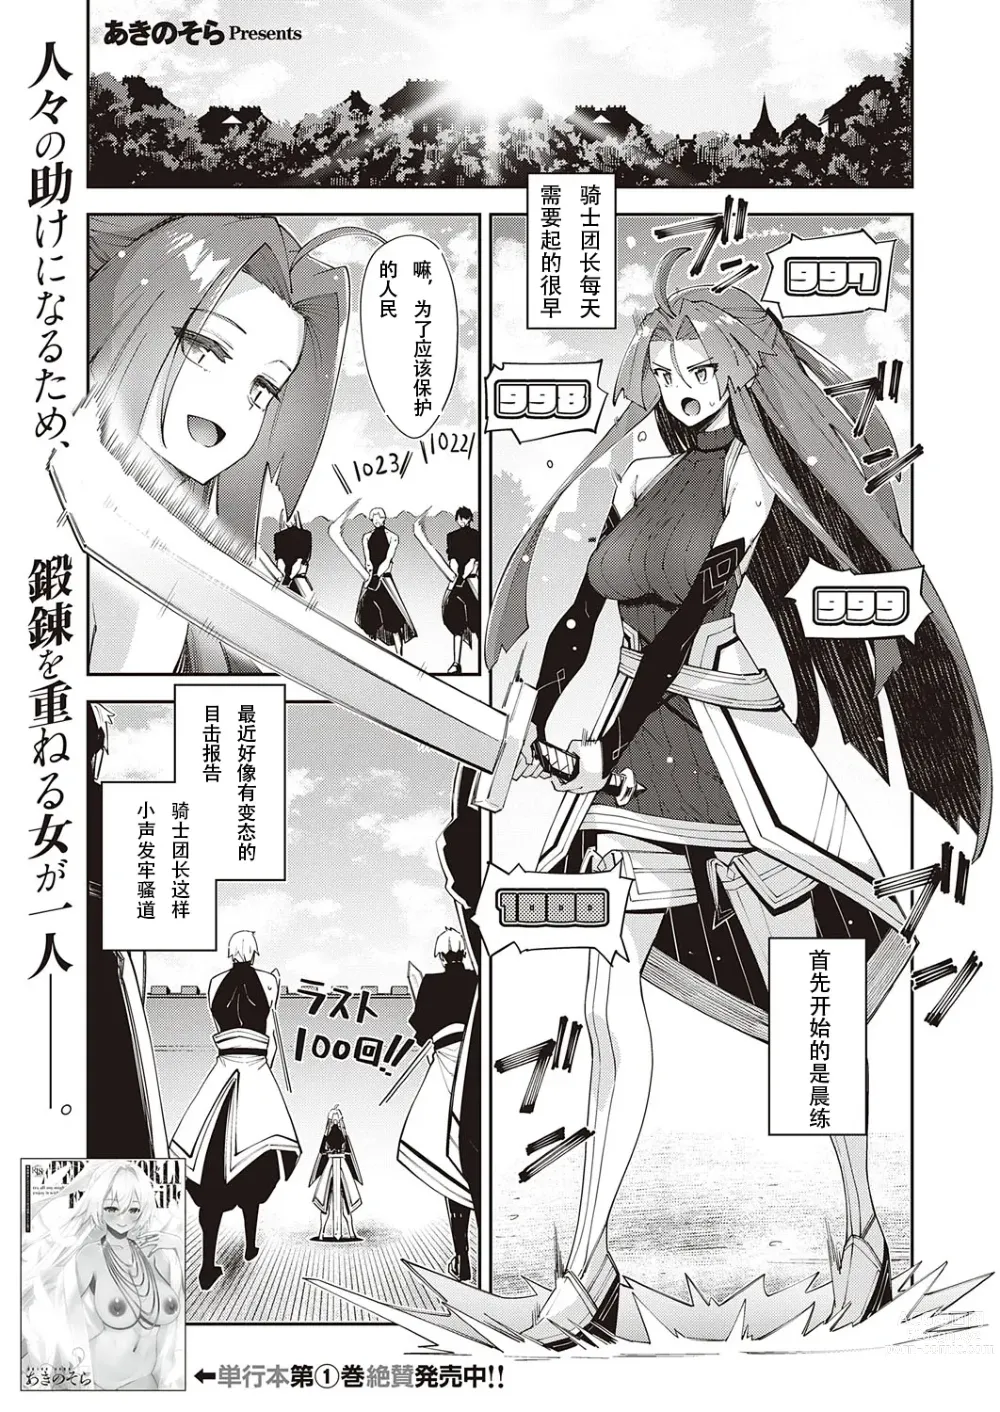 Page 1 of manga 既然来了异世界就用色批技能来全力讴歌 第8枪